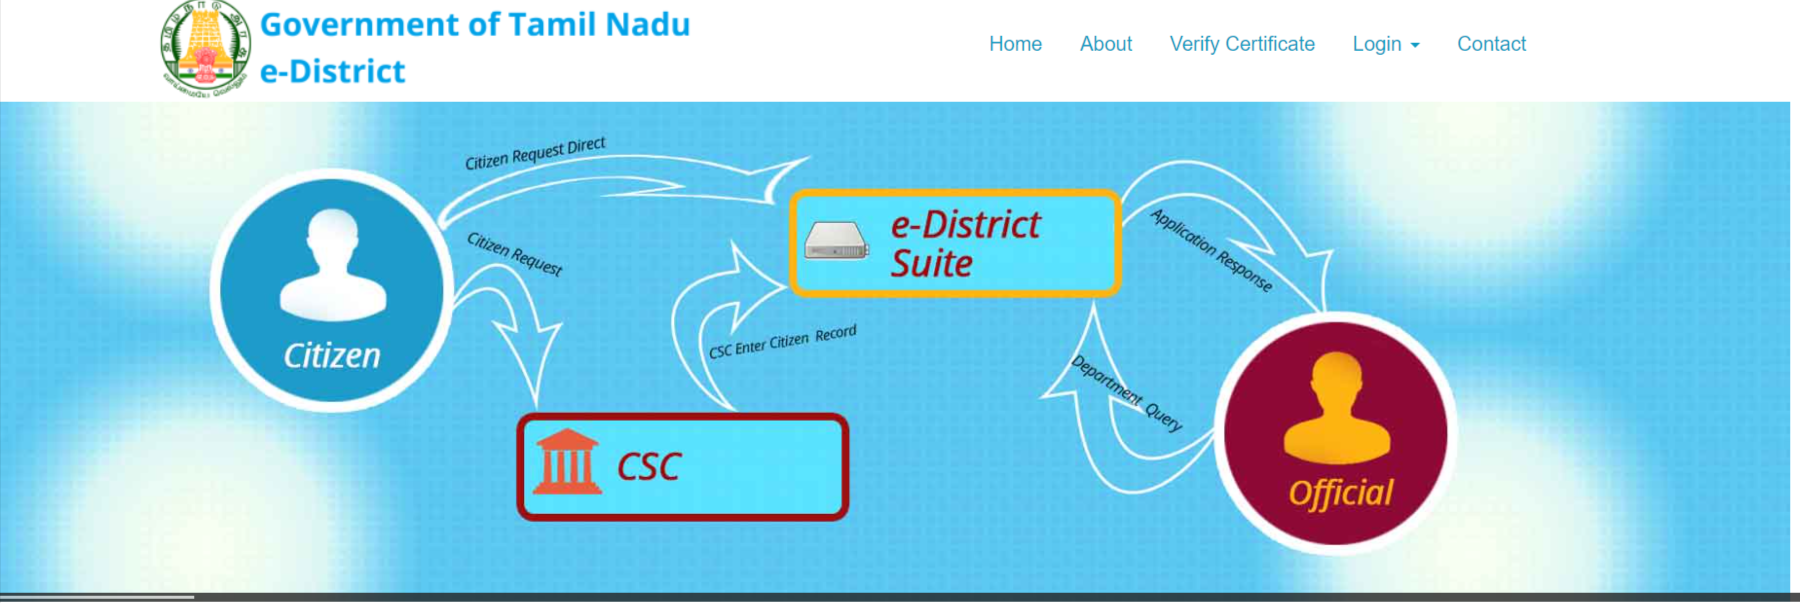 E-District Portal